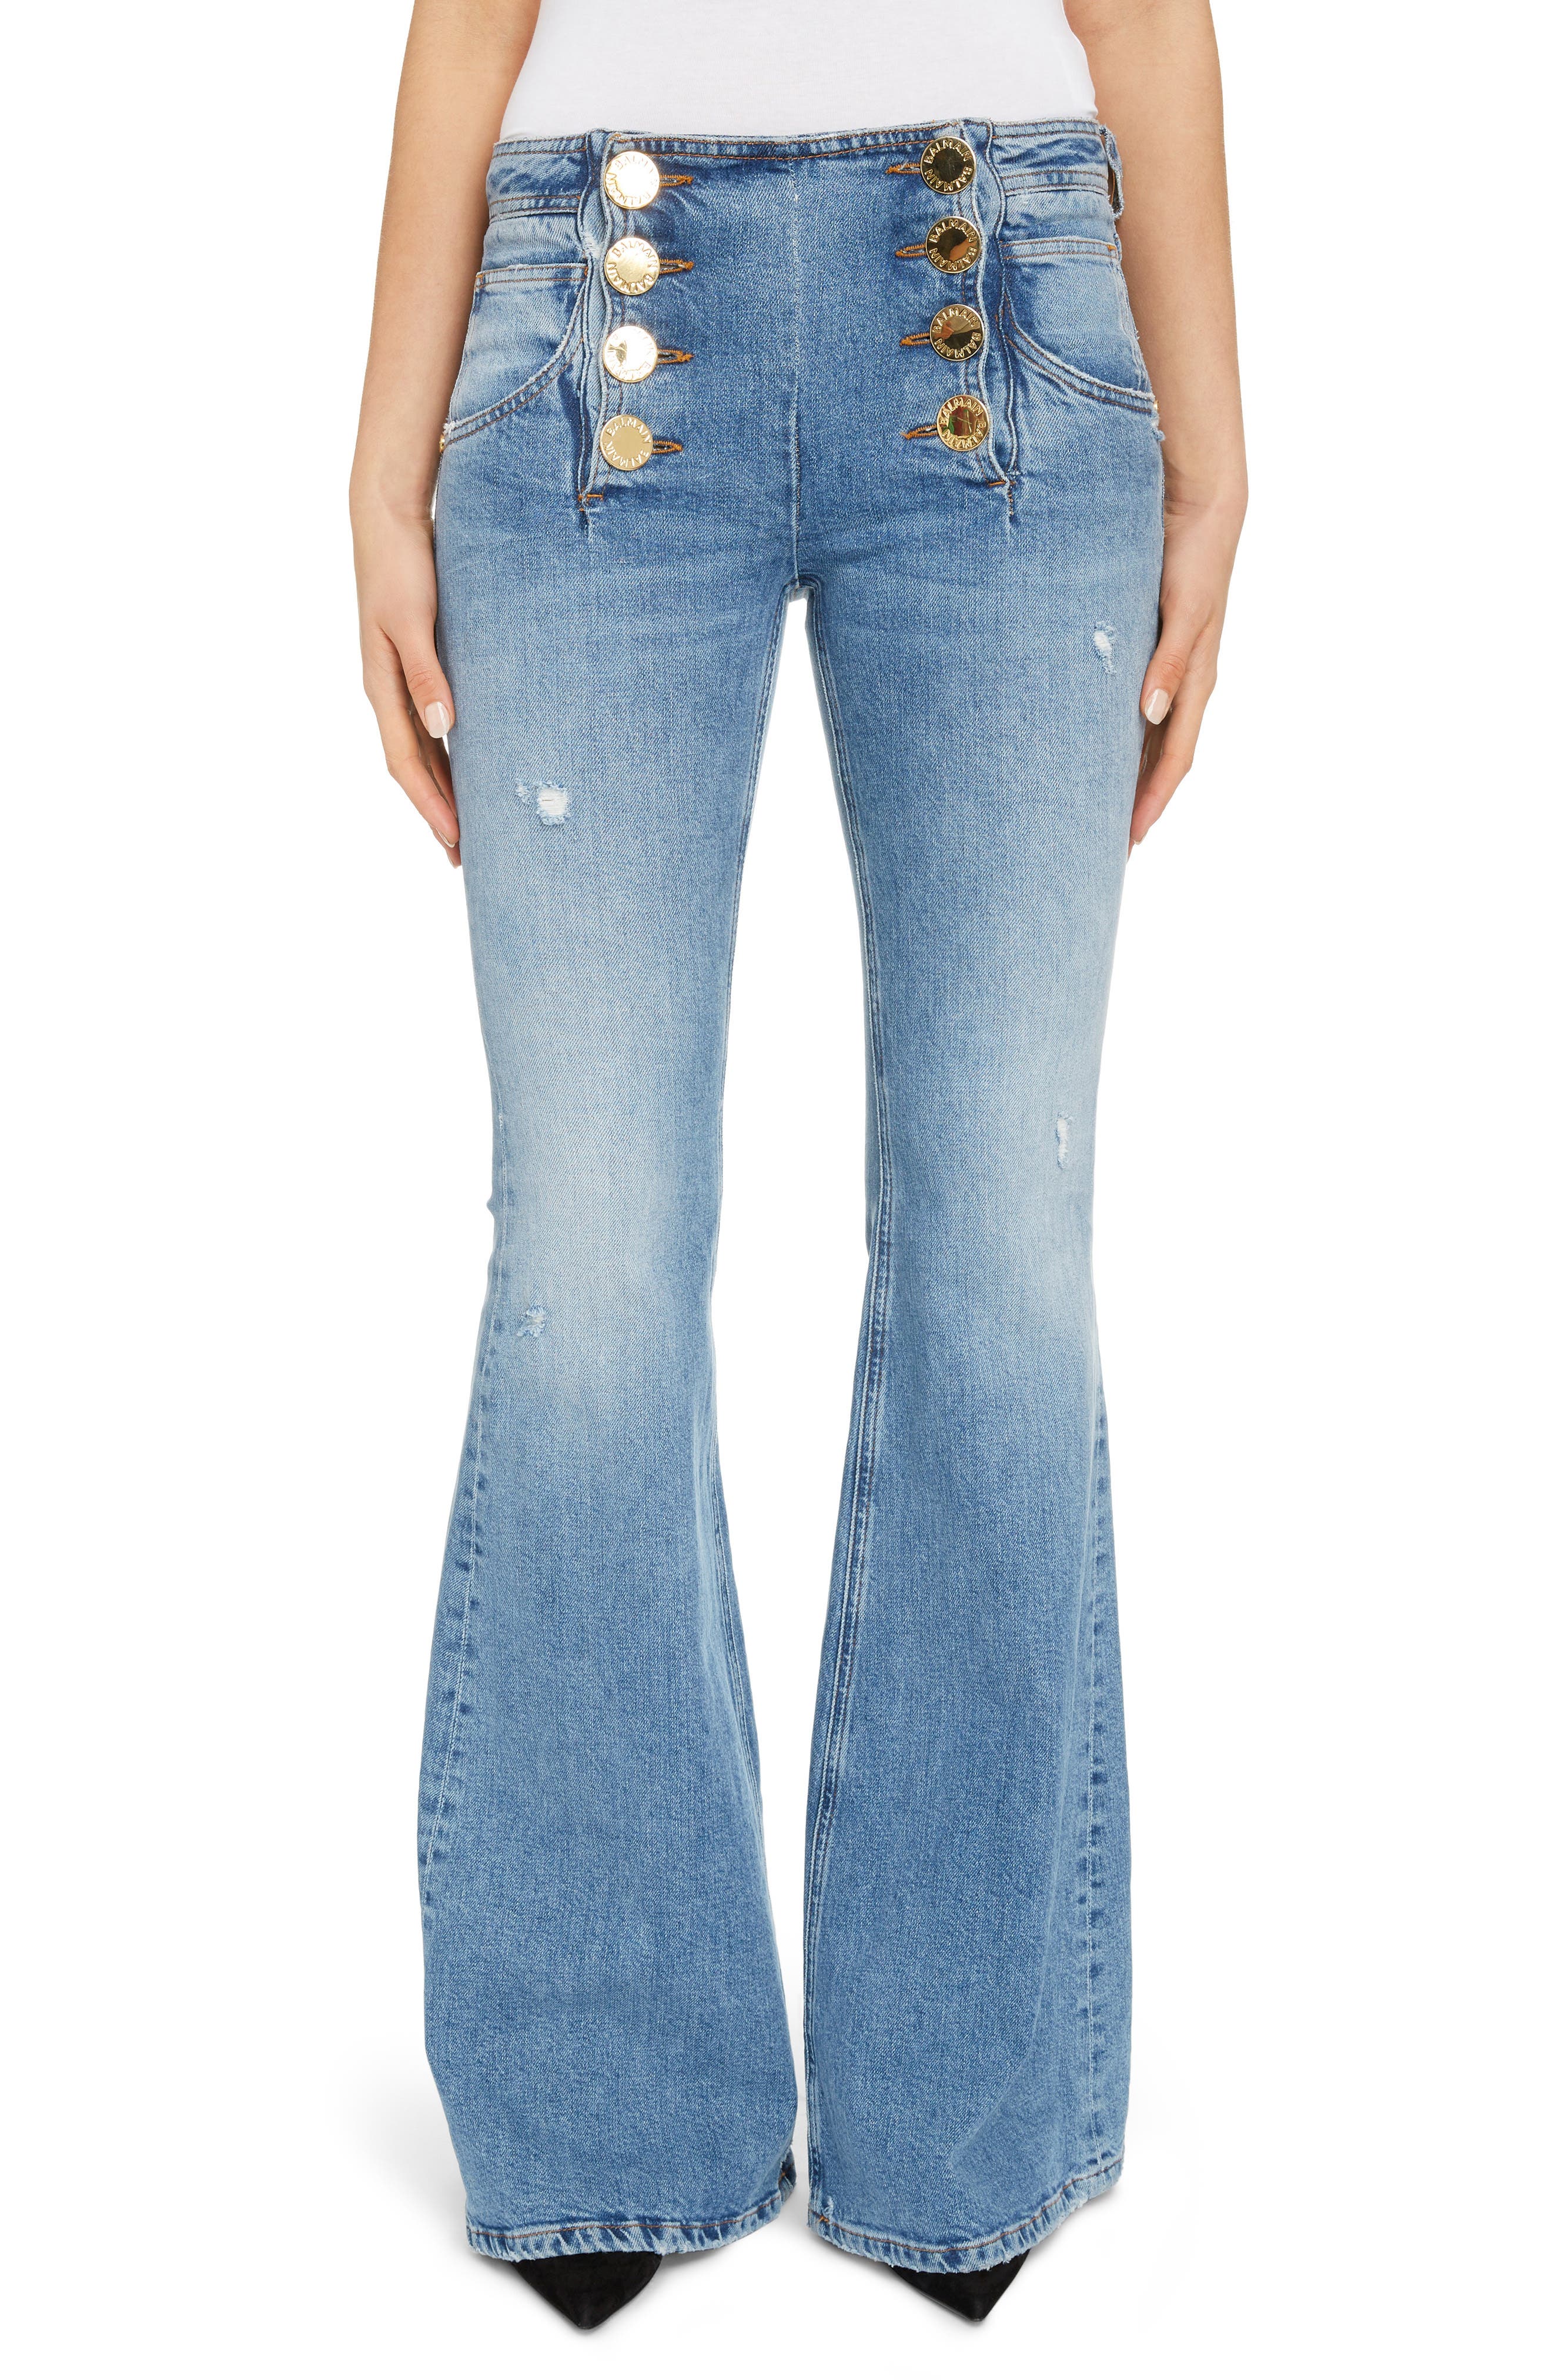 jeans similar to balmain